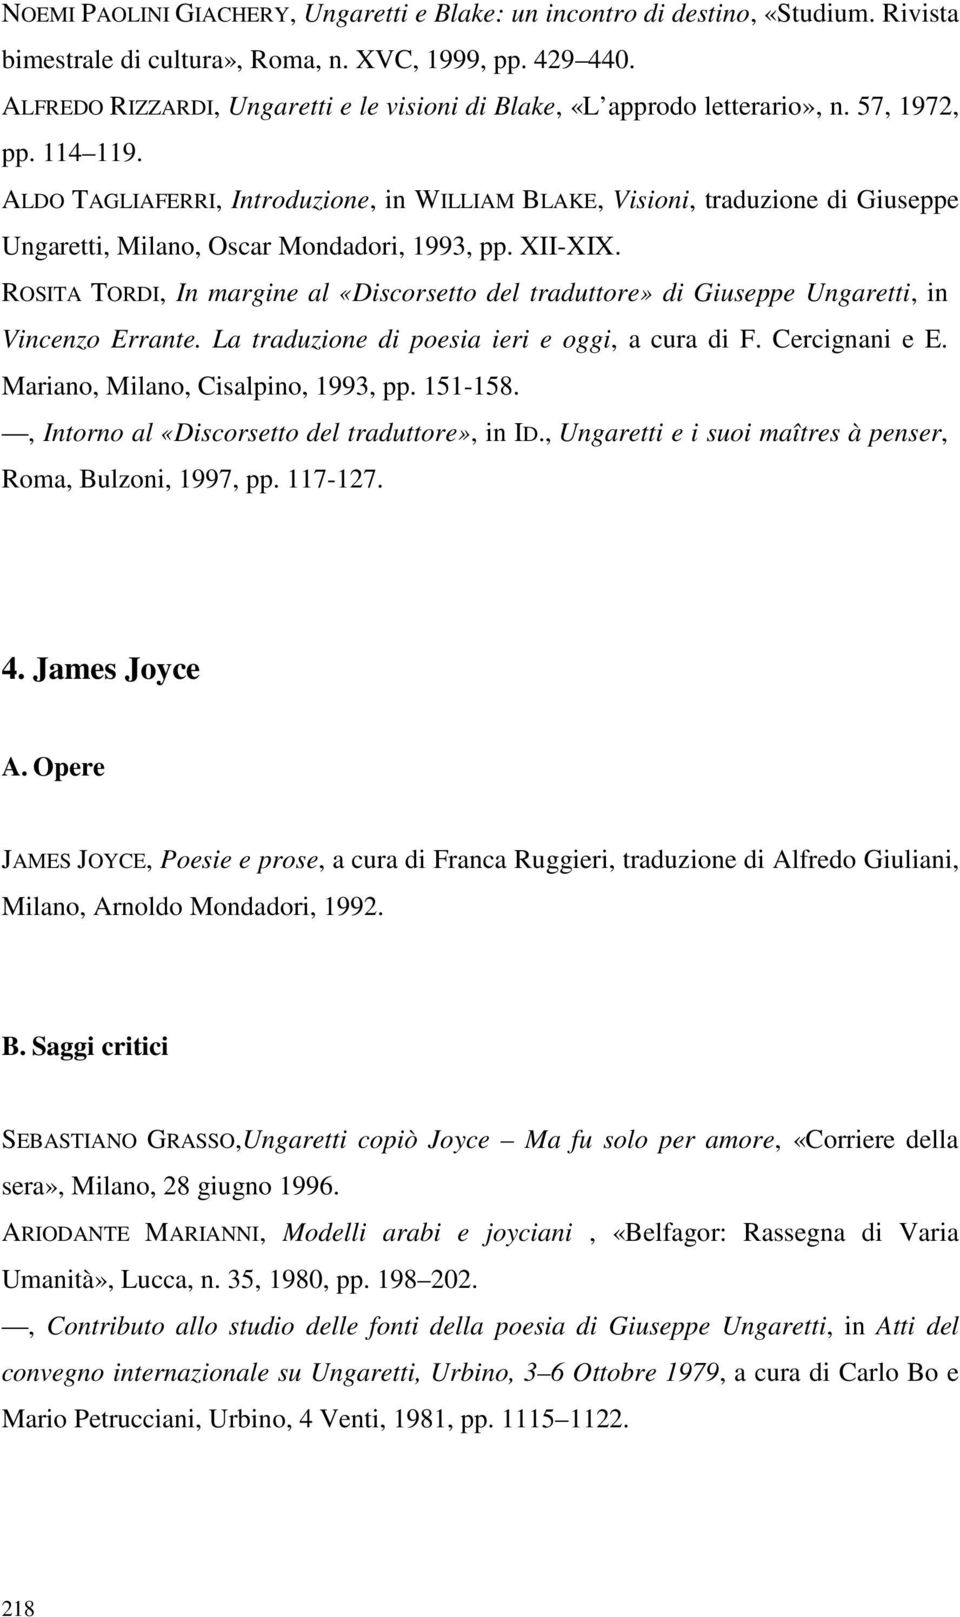 ALDO TAGLIAFERRI, Introduzione, in WILLIAM BLAKE, Visioni, traduzione di Giuseppe Ungaretti, Milano, Oscar Mondadori, 1993, pp. XII-XIX.